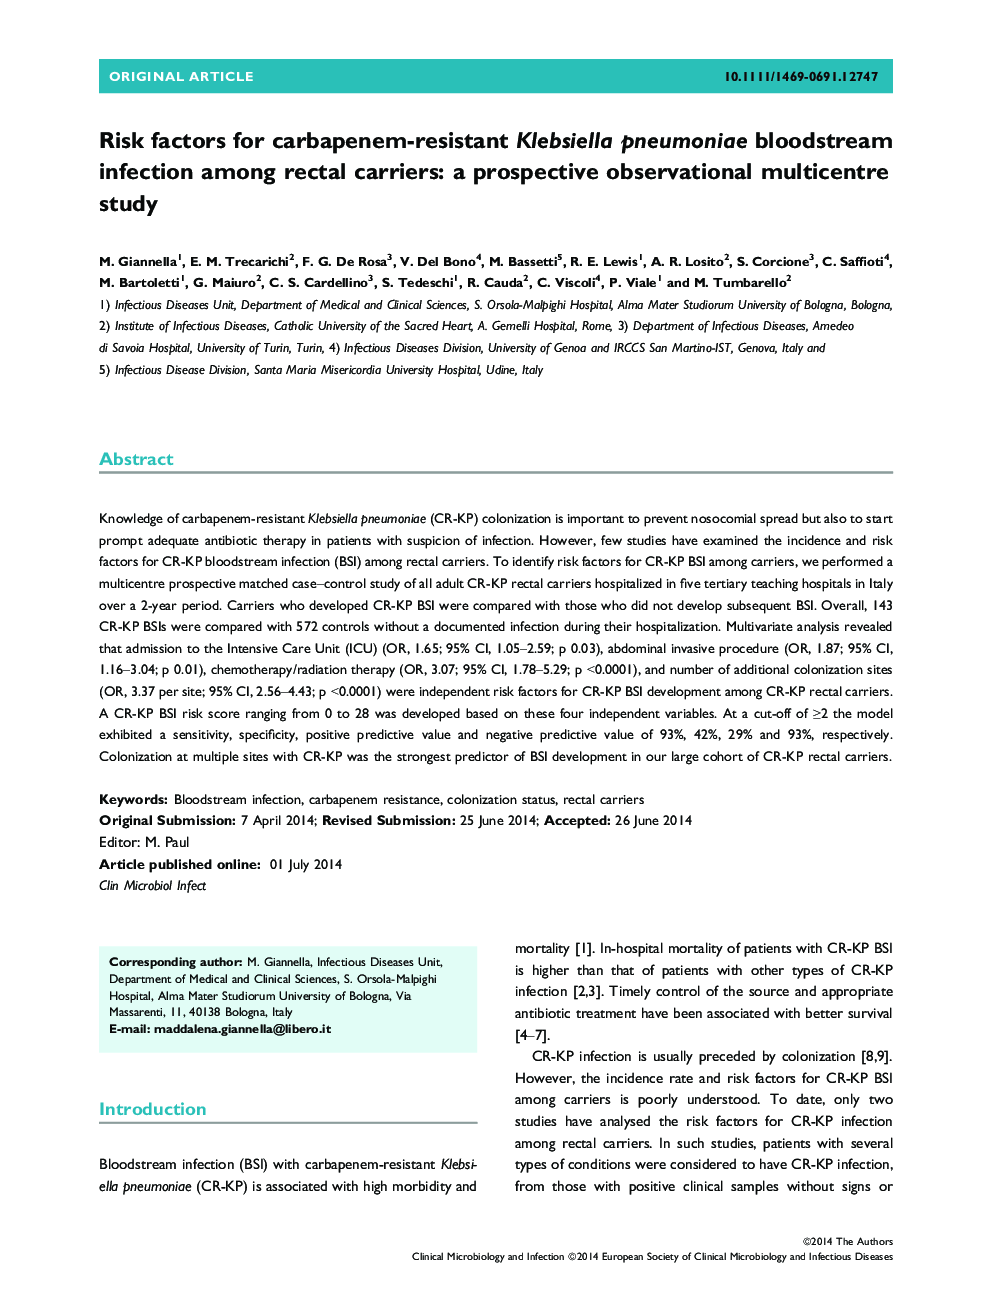 عوامل خطر برای عفونت کلاسیسیلا پنومونیه مقاوم در برابر کرباپنم در حامل های رکتوم: یک مطالعه چند محوری مشاهده نهایی 